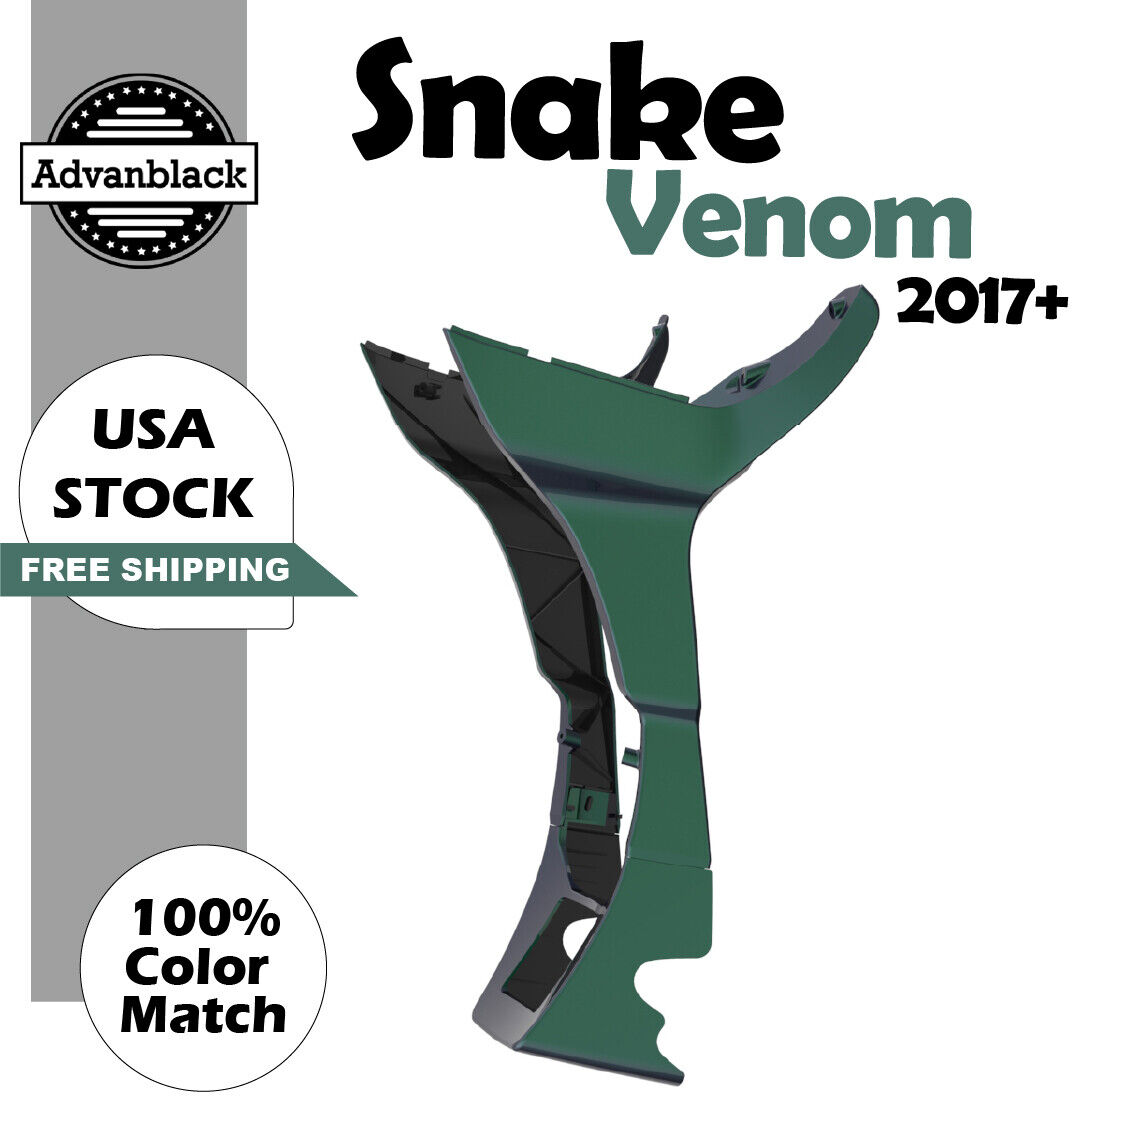 Advanblack Snake Venom Fairing Spoiler Kit Fits for 2017+ Harley Road Glide